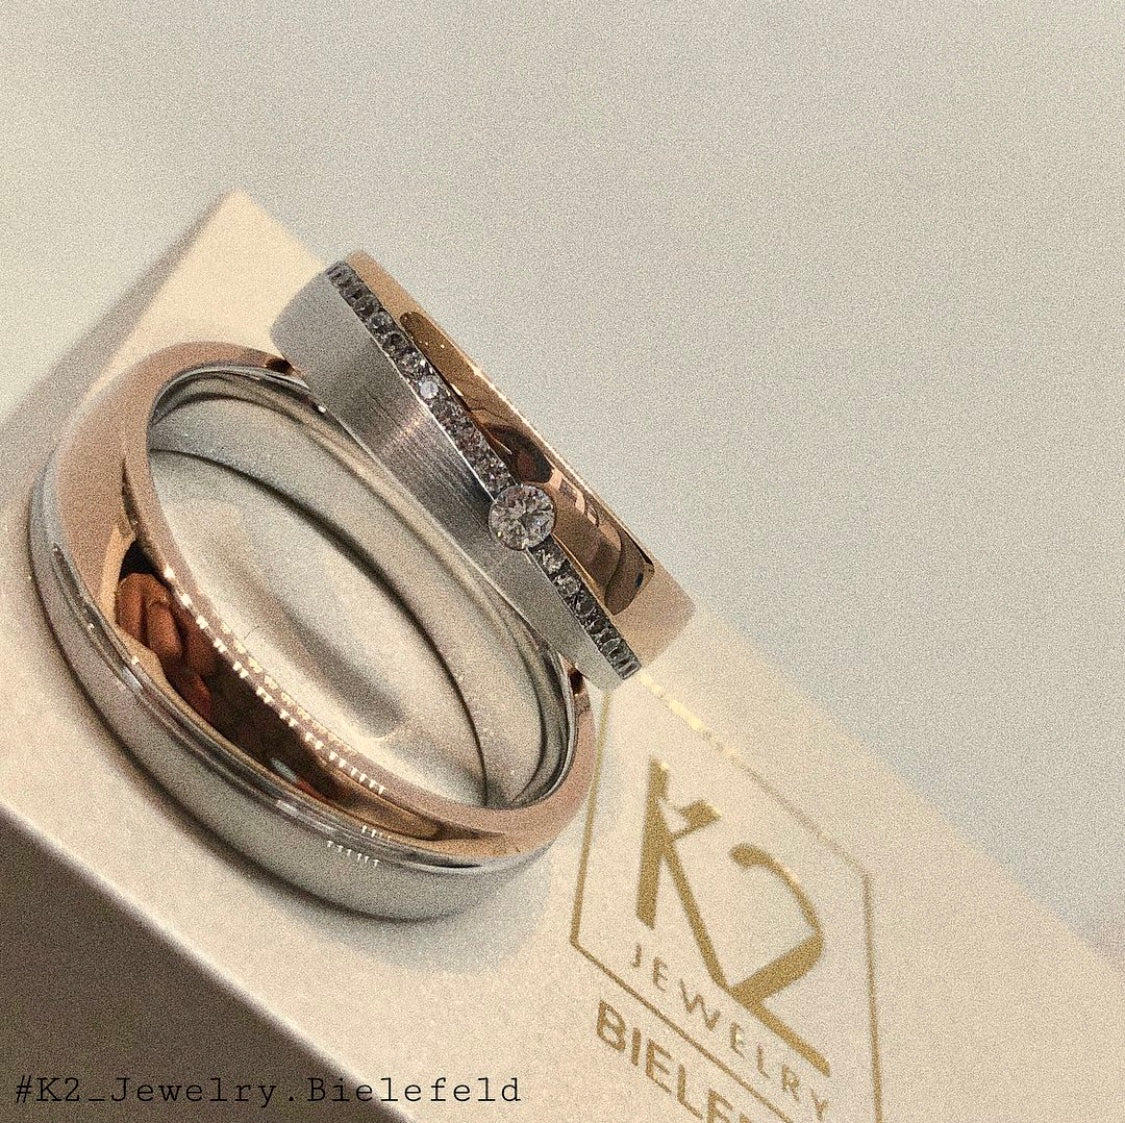 Bicolor Eheringe aus Roségold und Weißgold die auf einer K2 Jewelry Schatulle liegen.